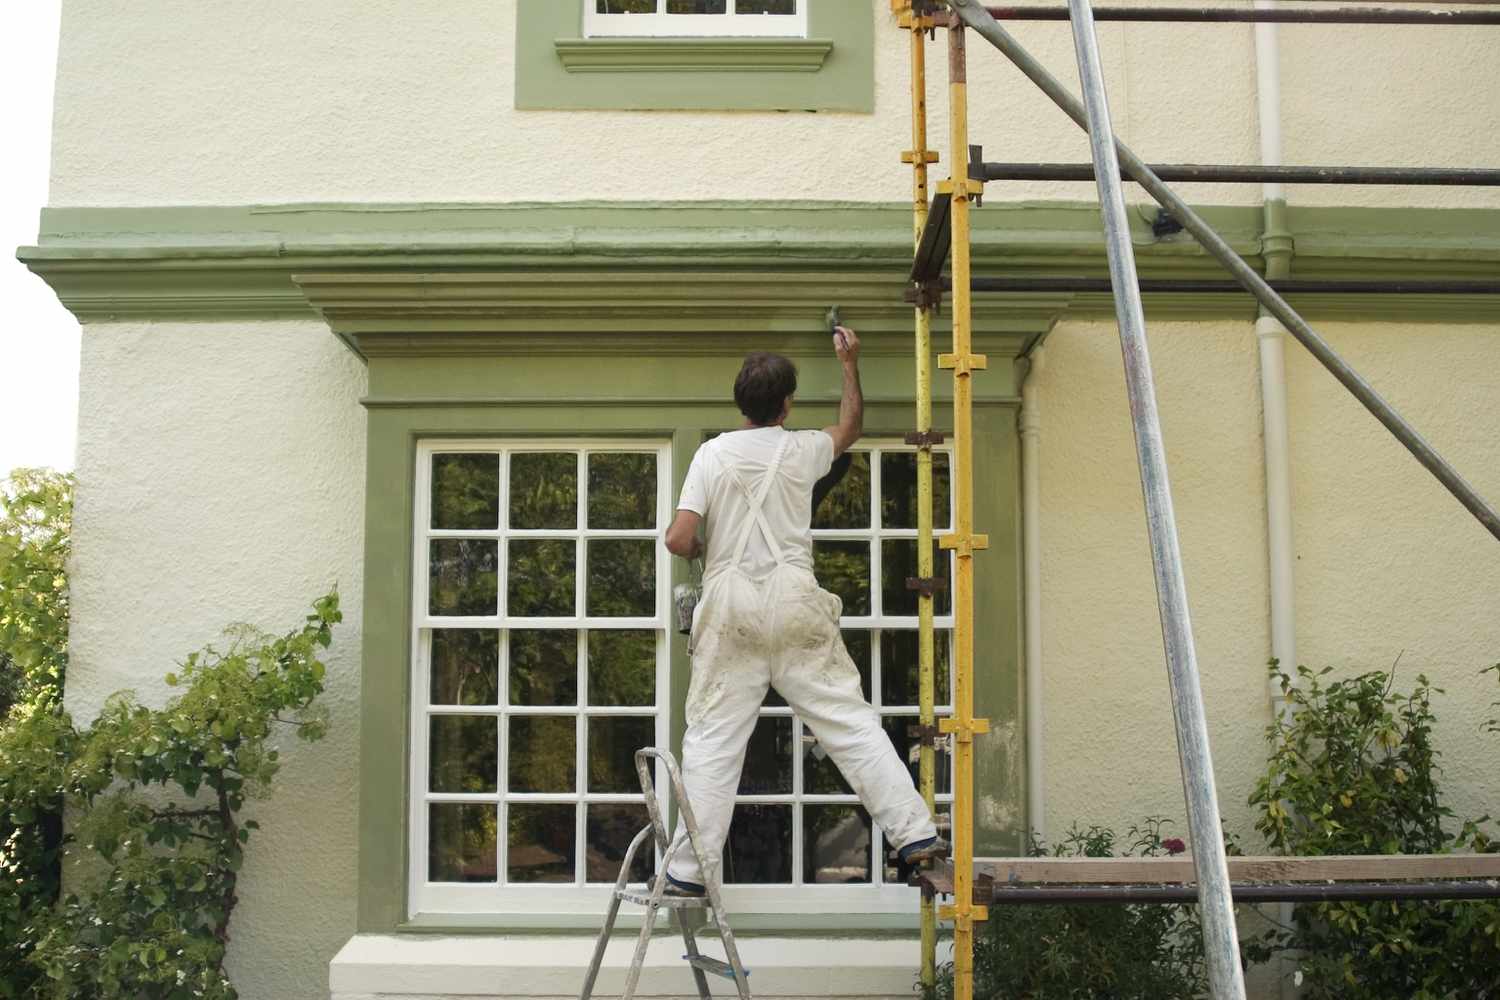 Pintor de casas sobre andamio pintando molduras verdes del exterior de la casa 